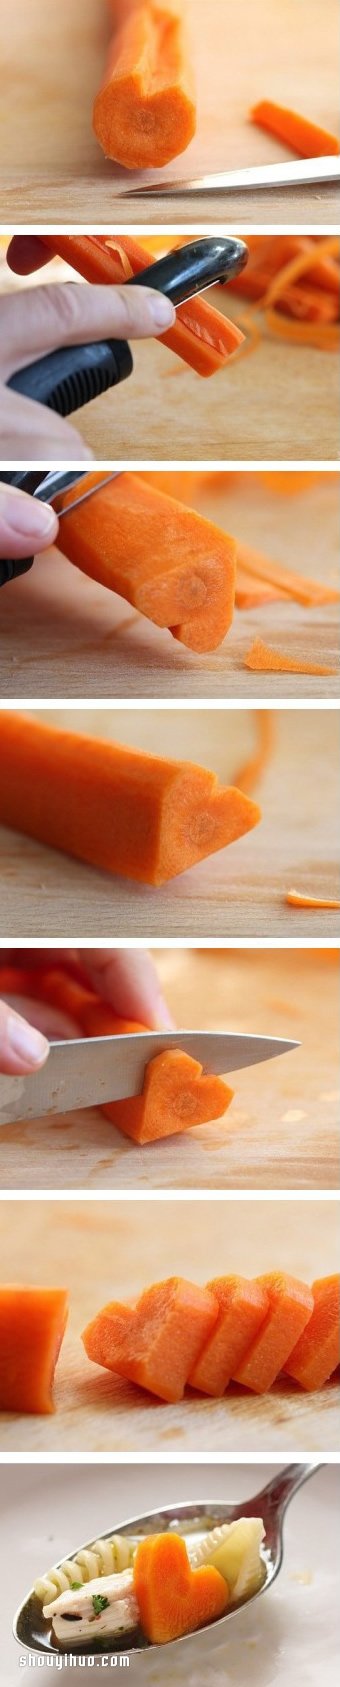 教你简单制作爱心番茄、香肠和胡萝卜的方法